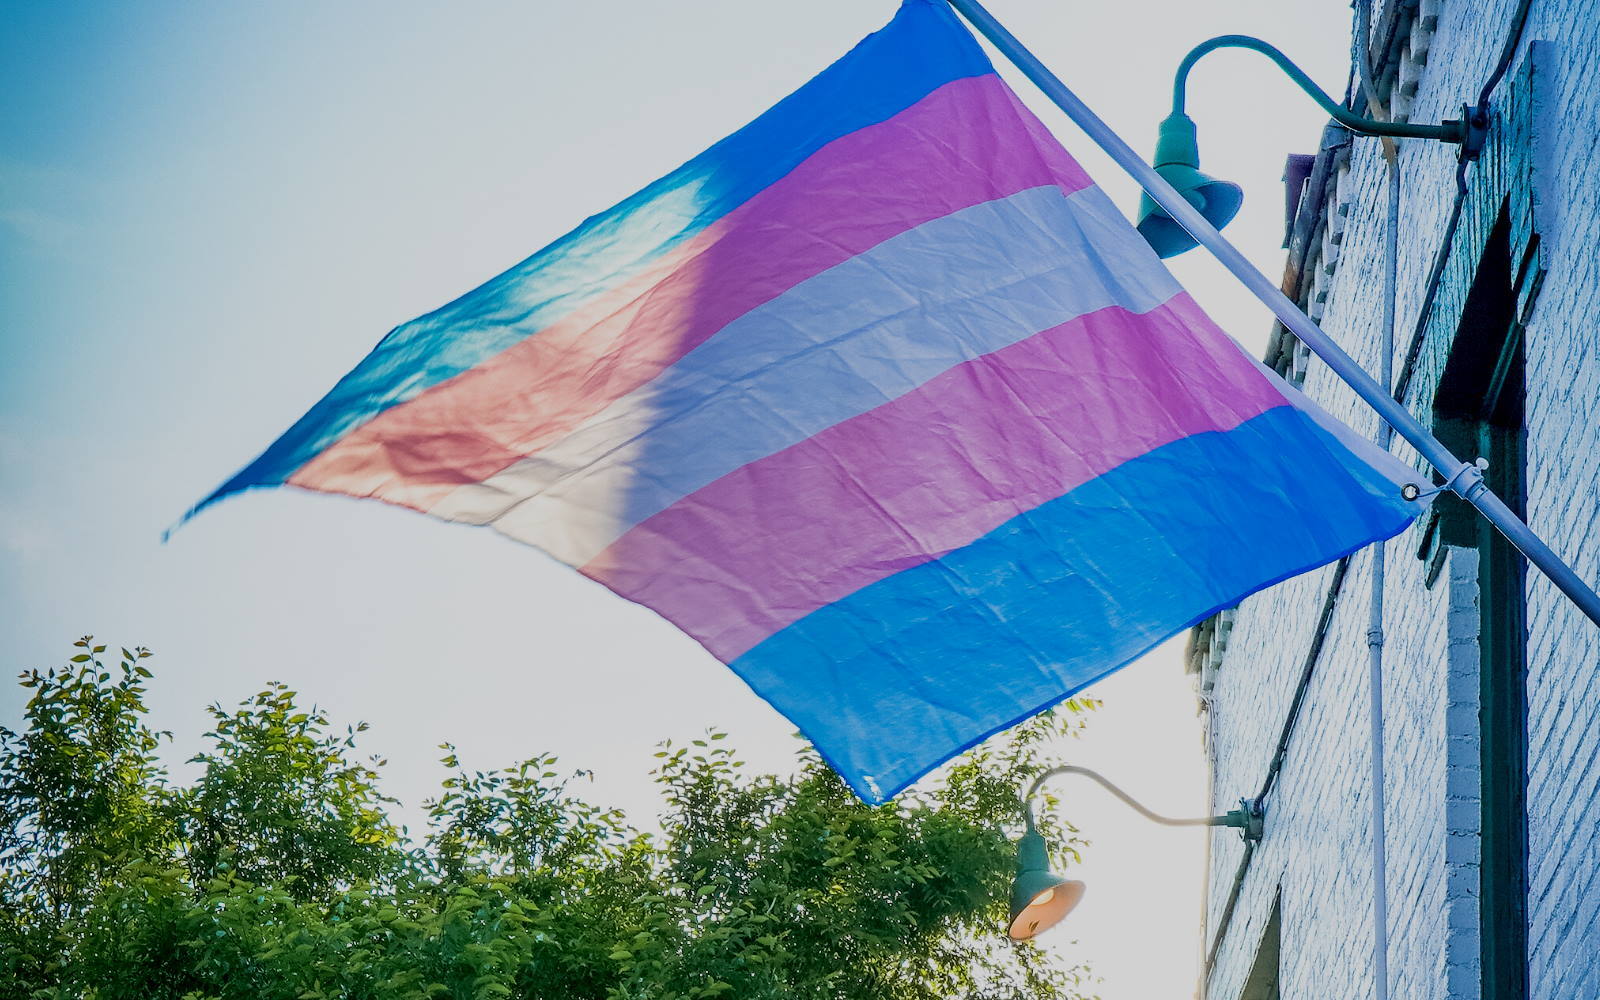 Stellungnahme des Referats Trans*: Zum Verbot der Konversionsmaßnahmen und Terre des femmes